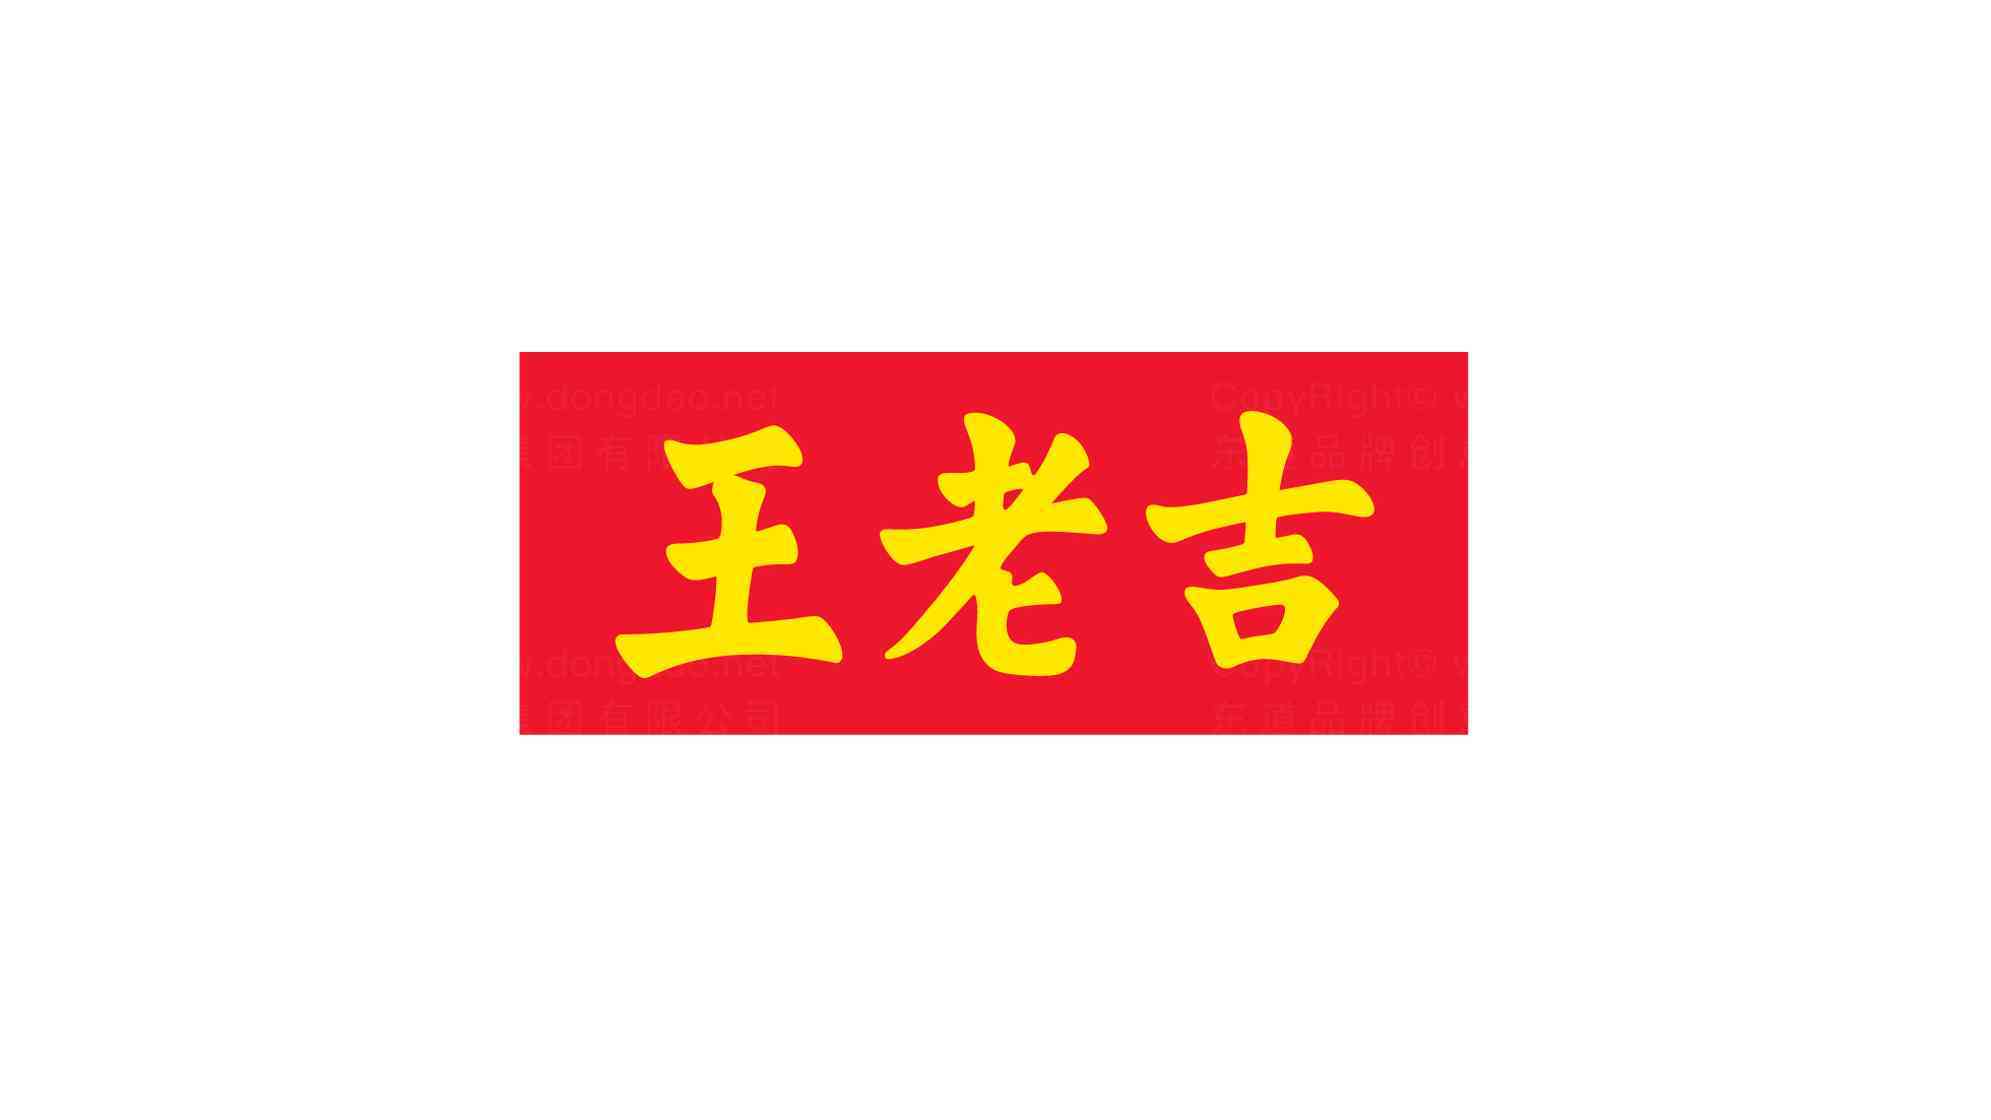 王老吉logo优化设计图片素材